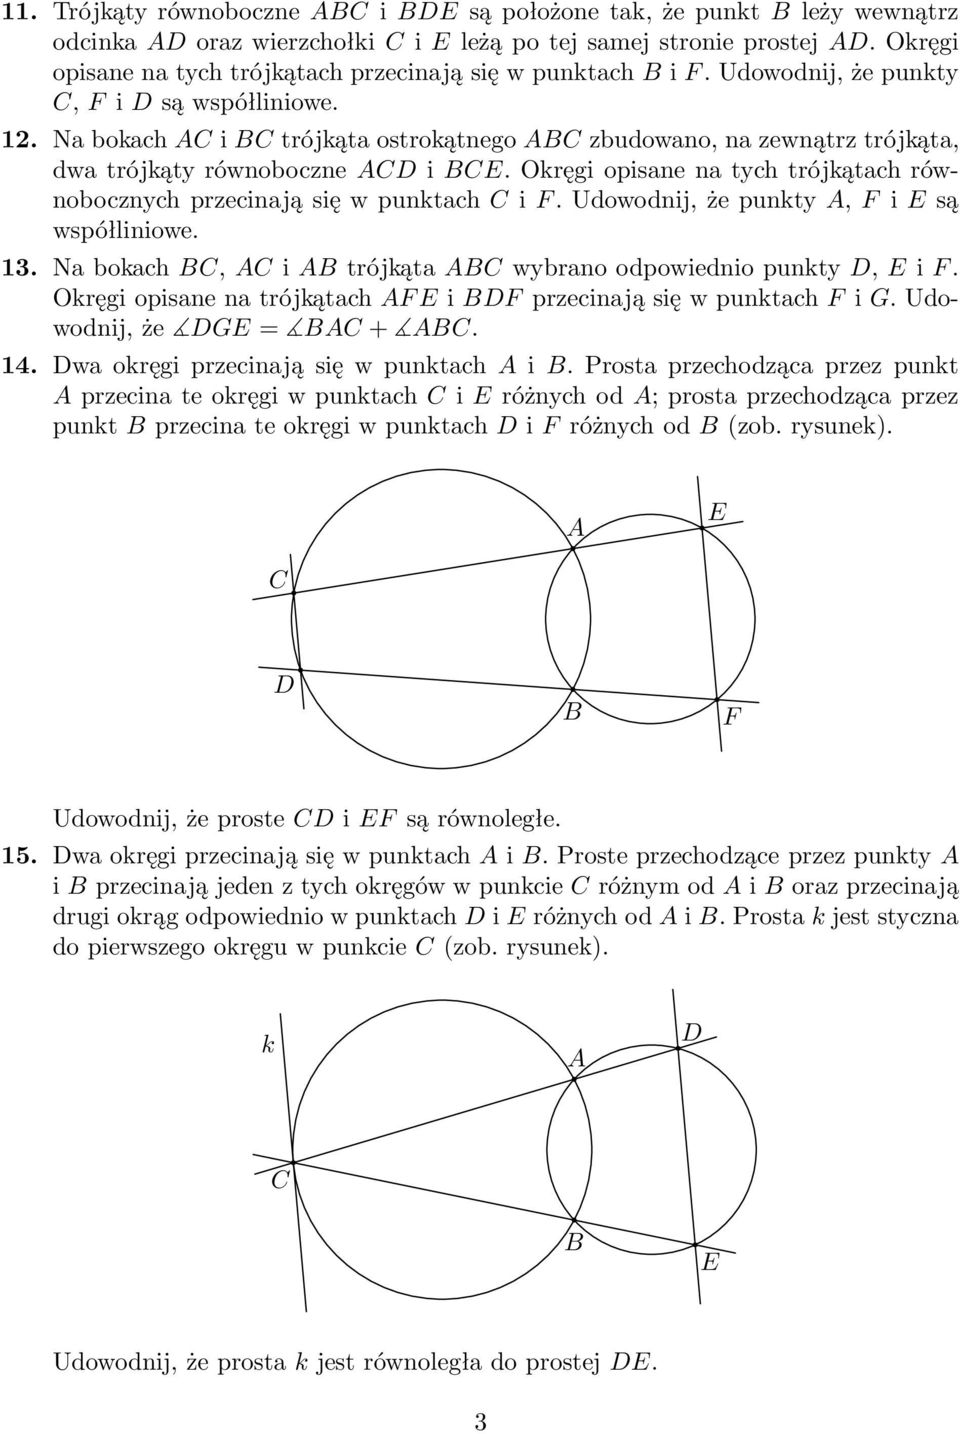 Okręgi opisane na tych trójkątach równobocznychprzecinająsięwpunktachif.udowodnij,żepunkty,fisą współliniowe. 13. Nabokach,itrójkątawybranoodpowiedniopunkty,iF.